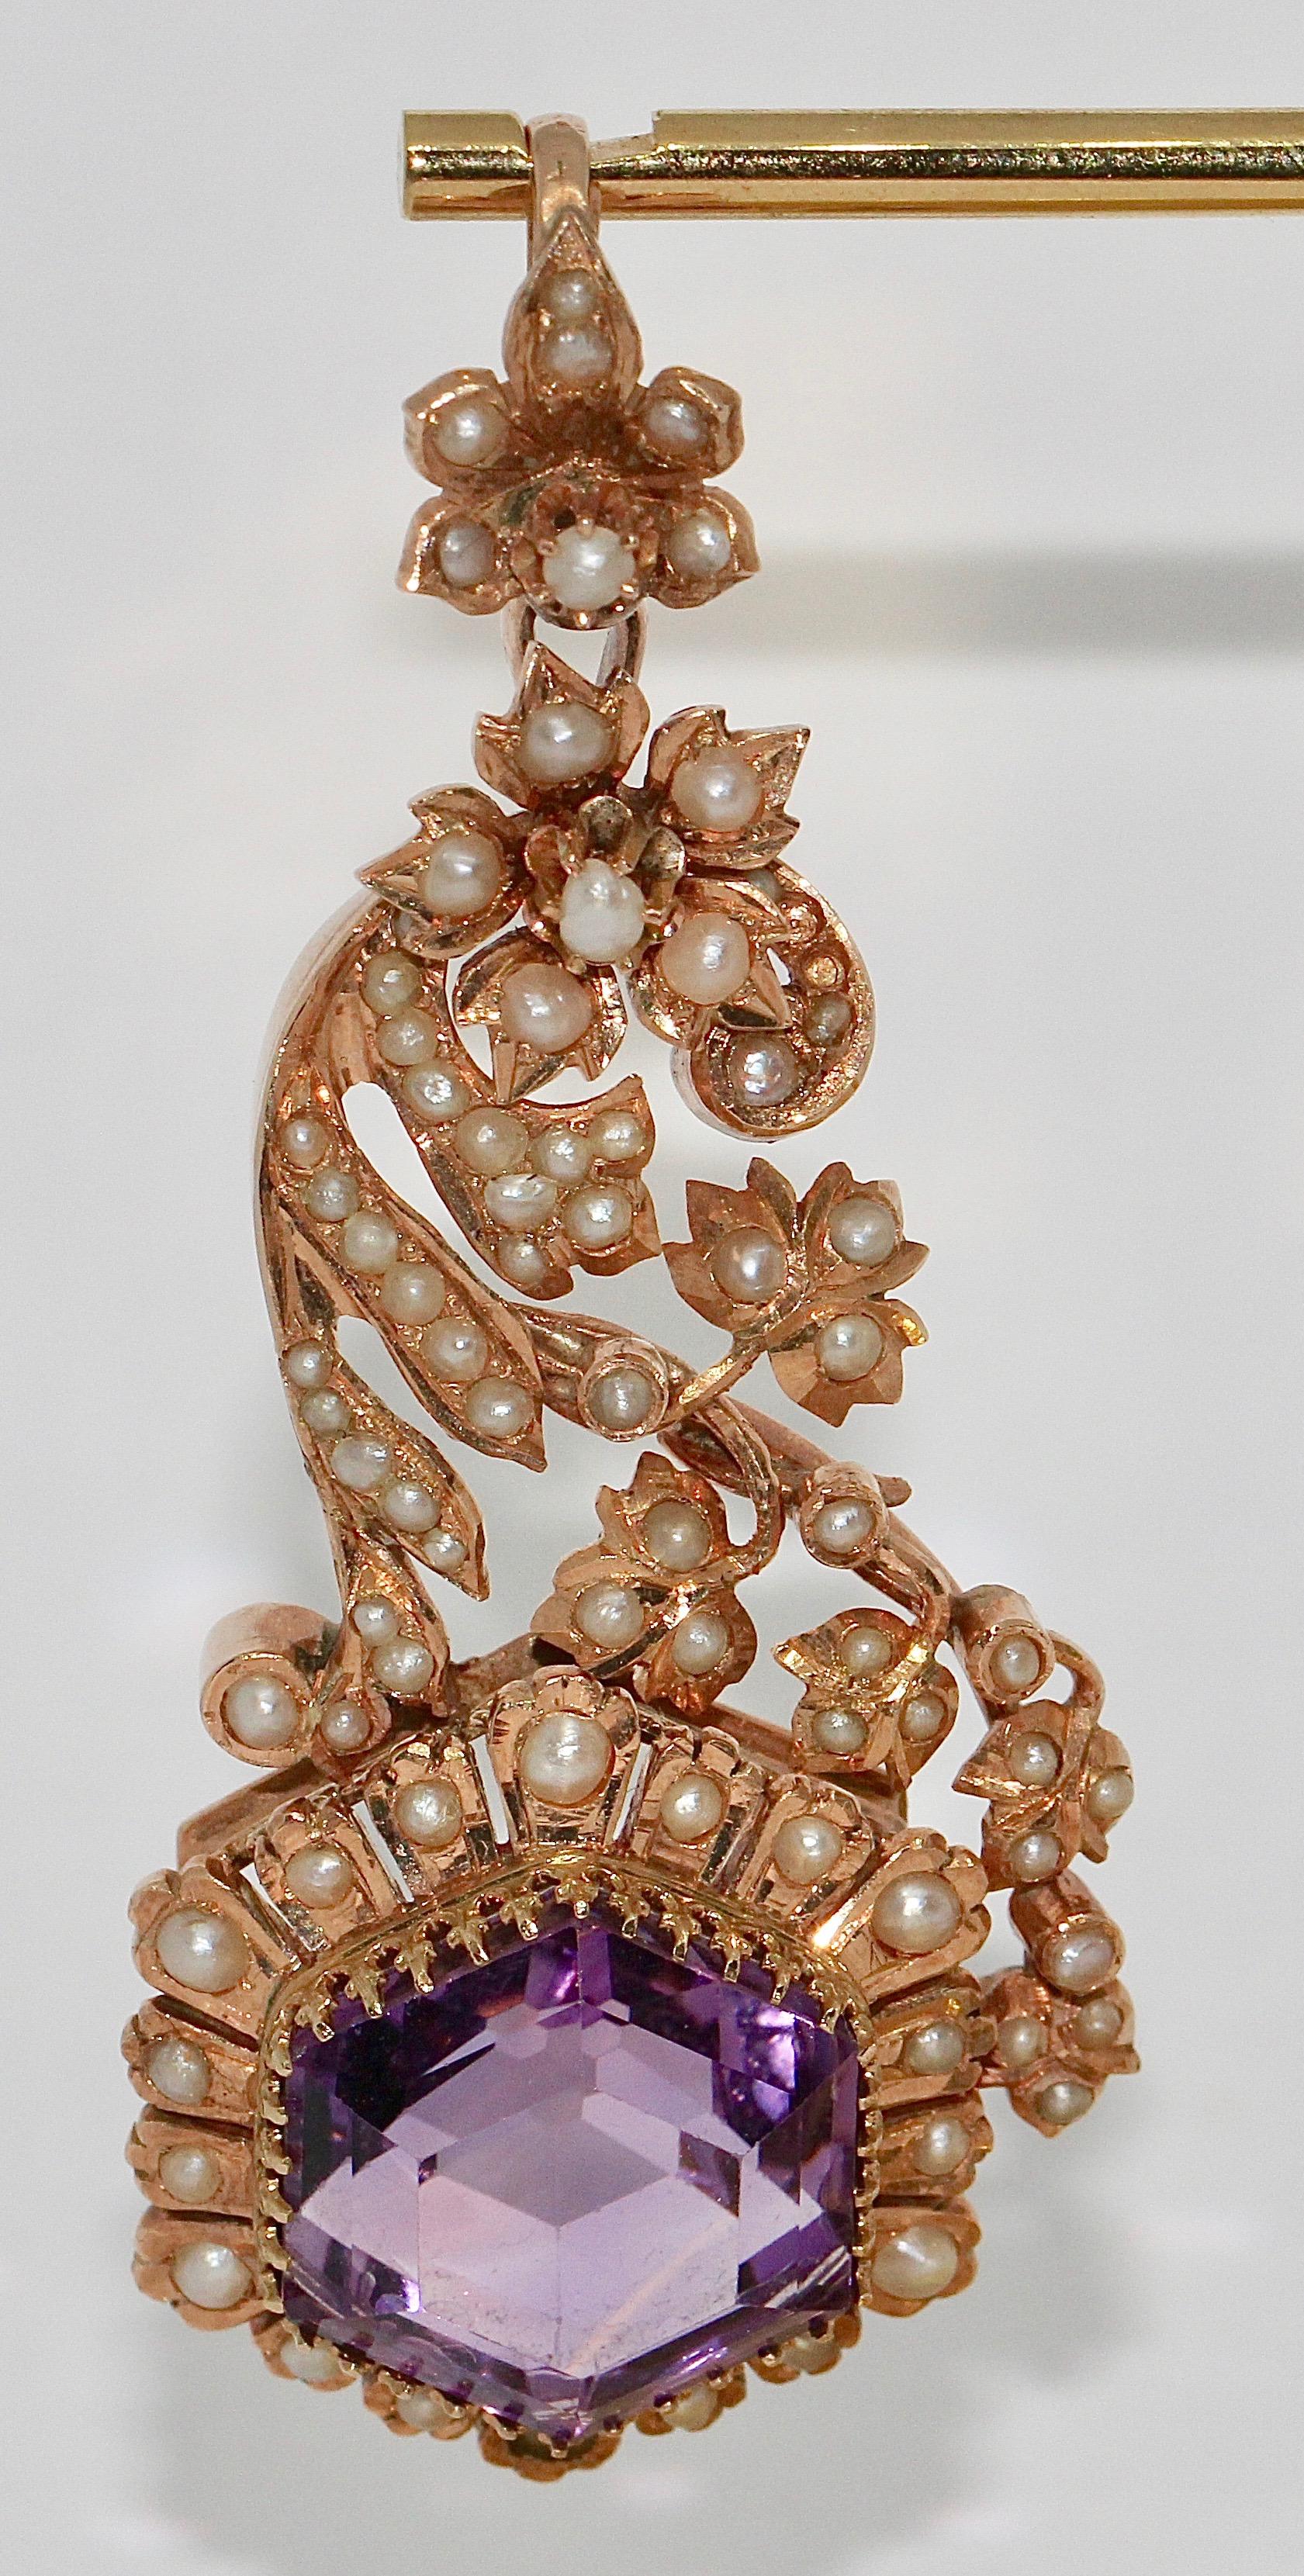 Antique Victorian Amethyst Enhancer, pendentif avec perles naturelles. or rose 14 carats.

Nous proposons également des boucles d'oreilles adaptées. Jetez un coup d'œil à nos autres offres.